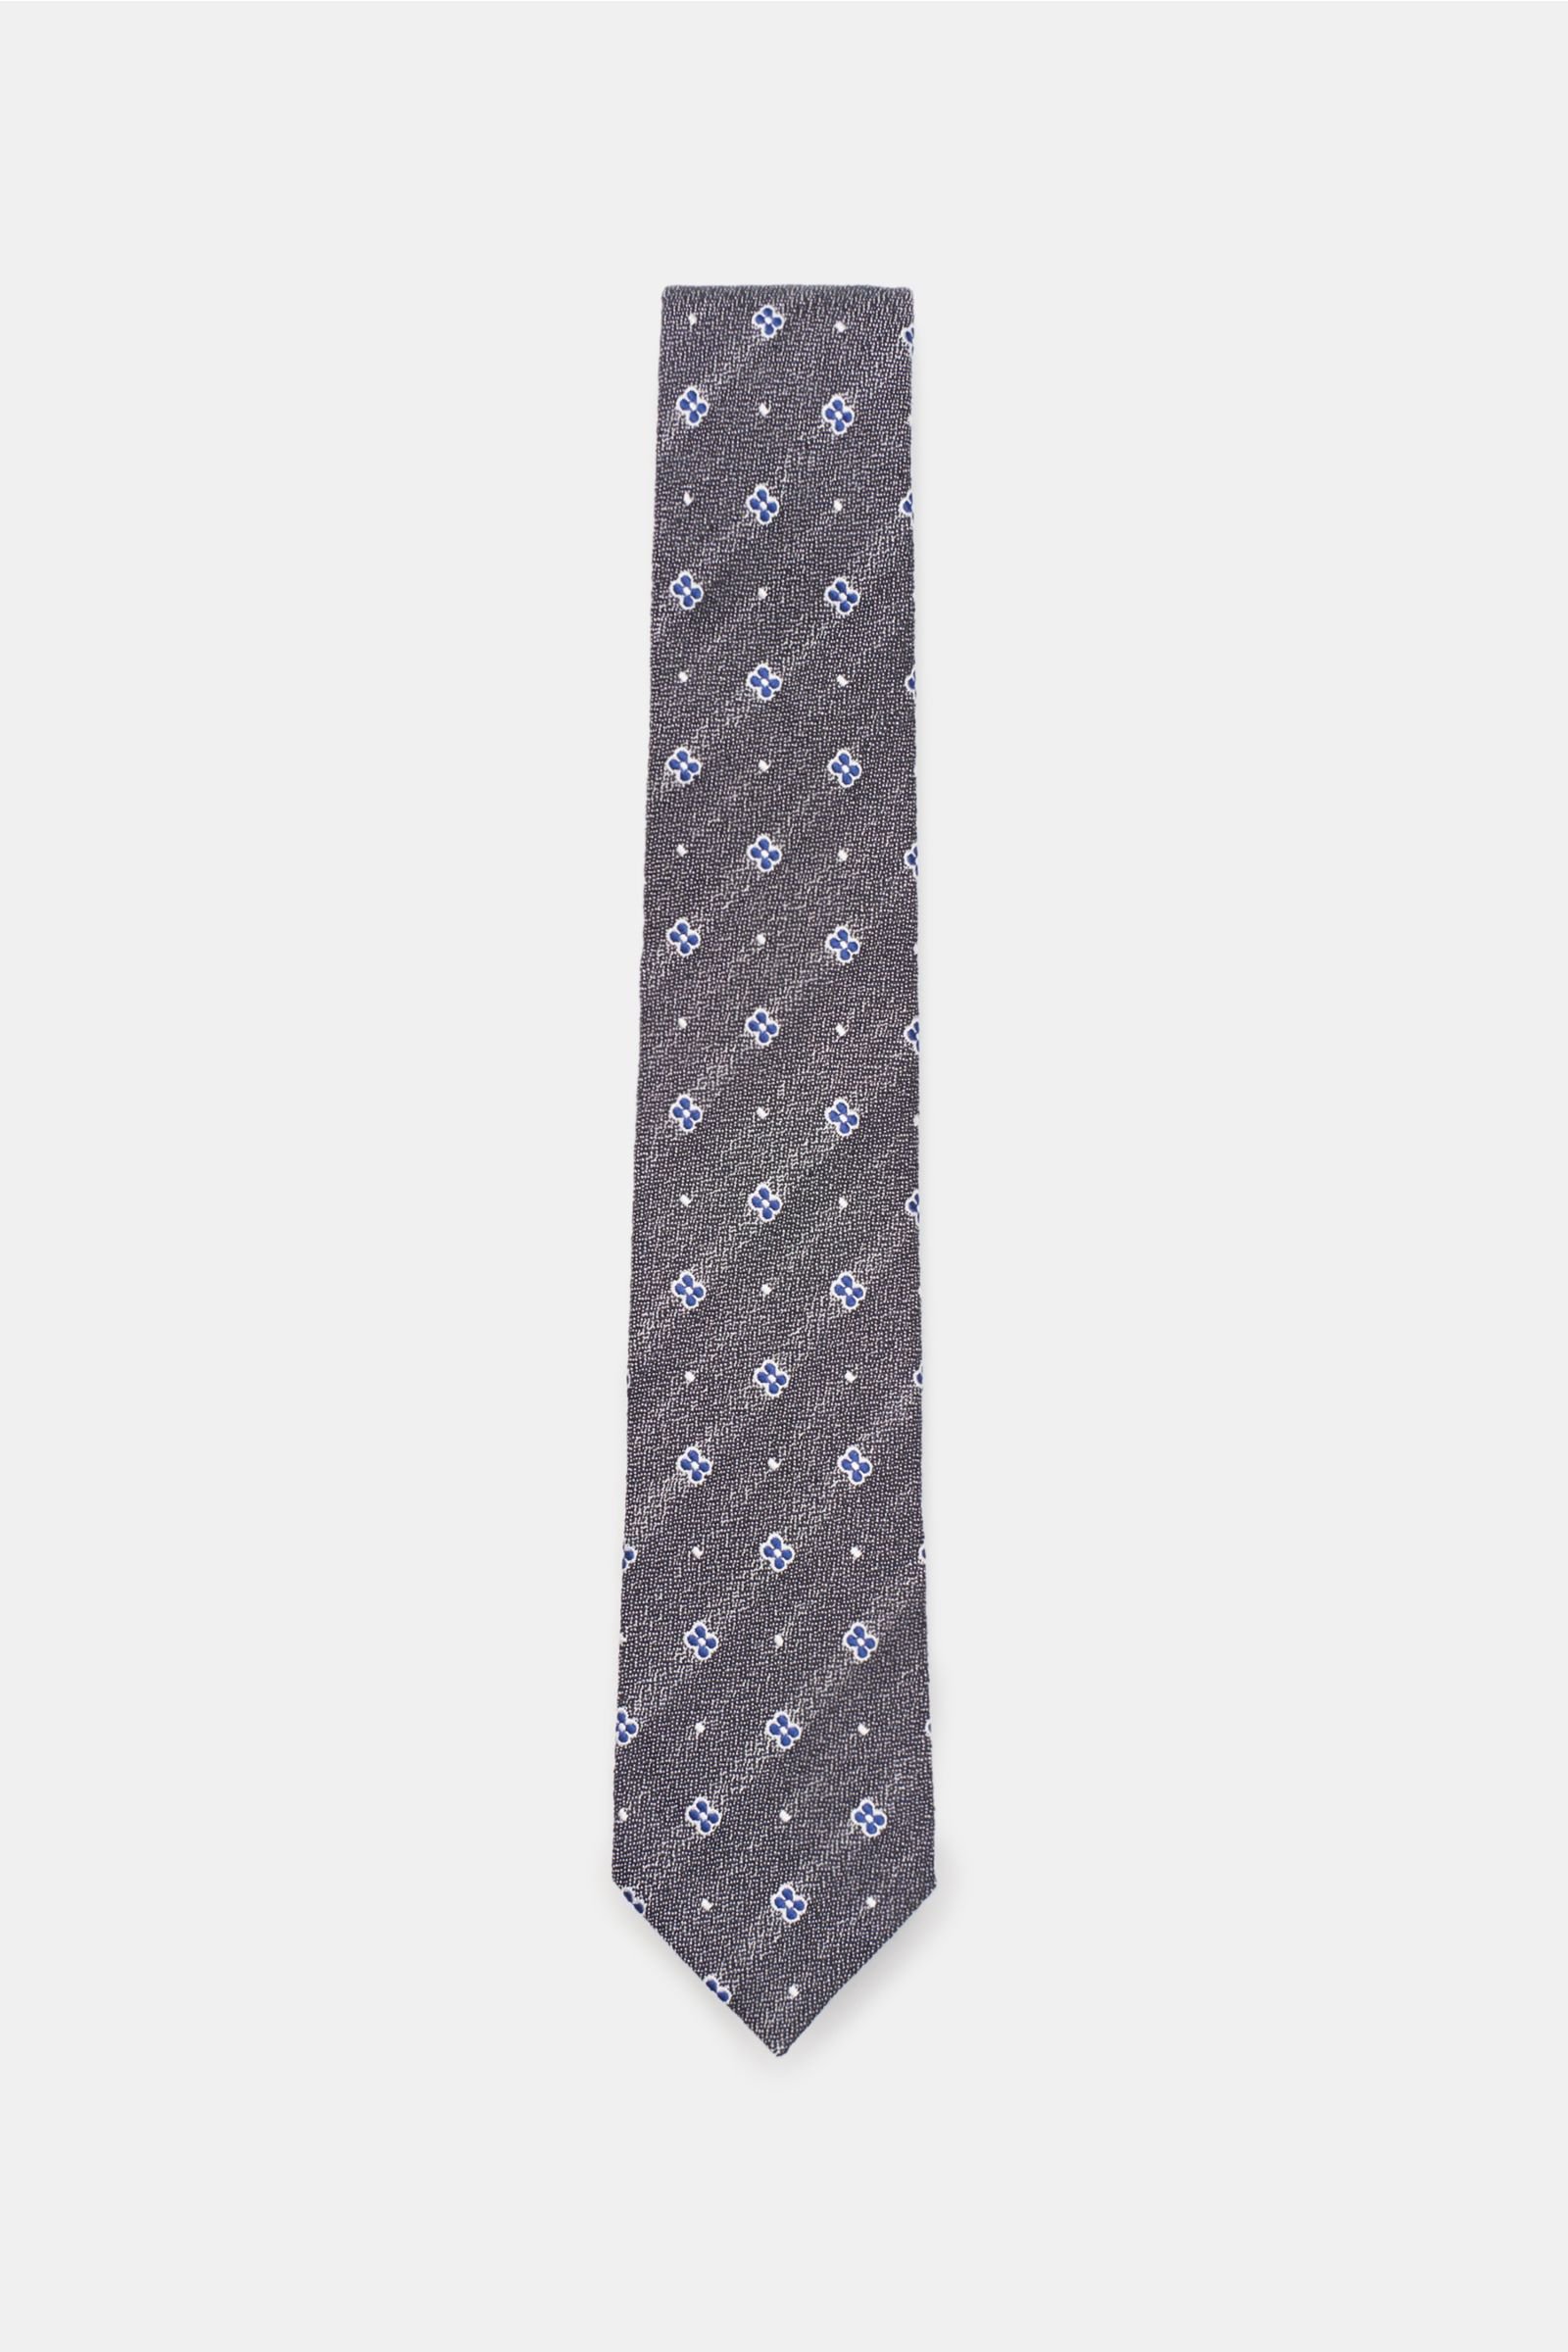 Krawatte dunkelgrau/blau gemustert